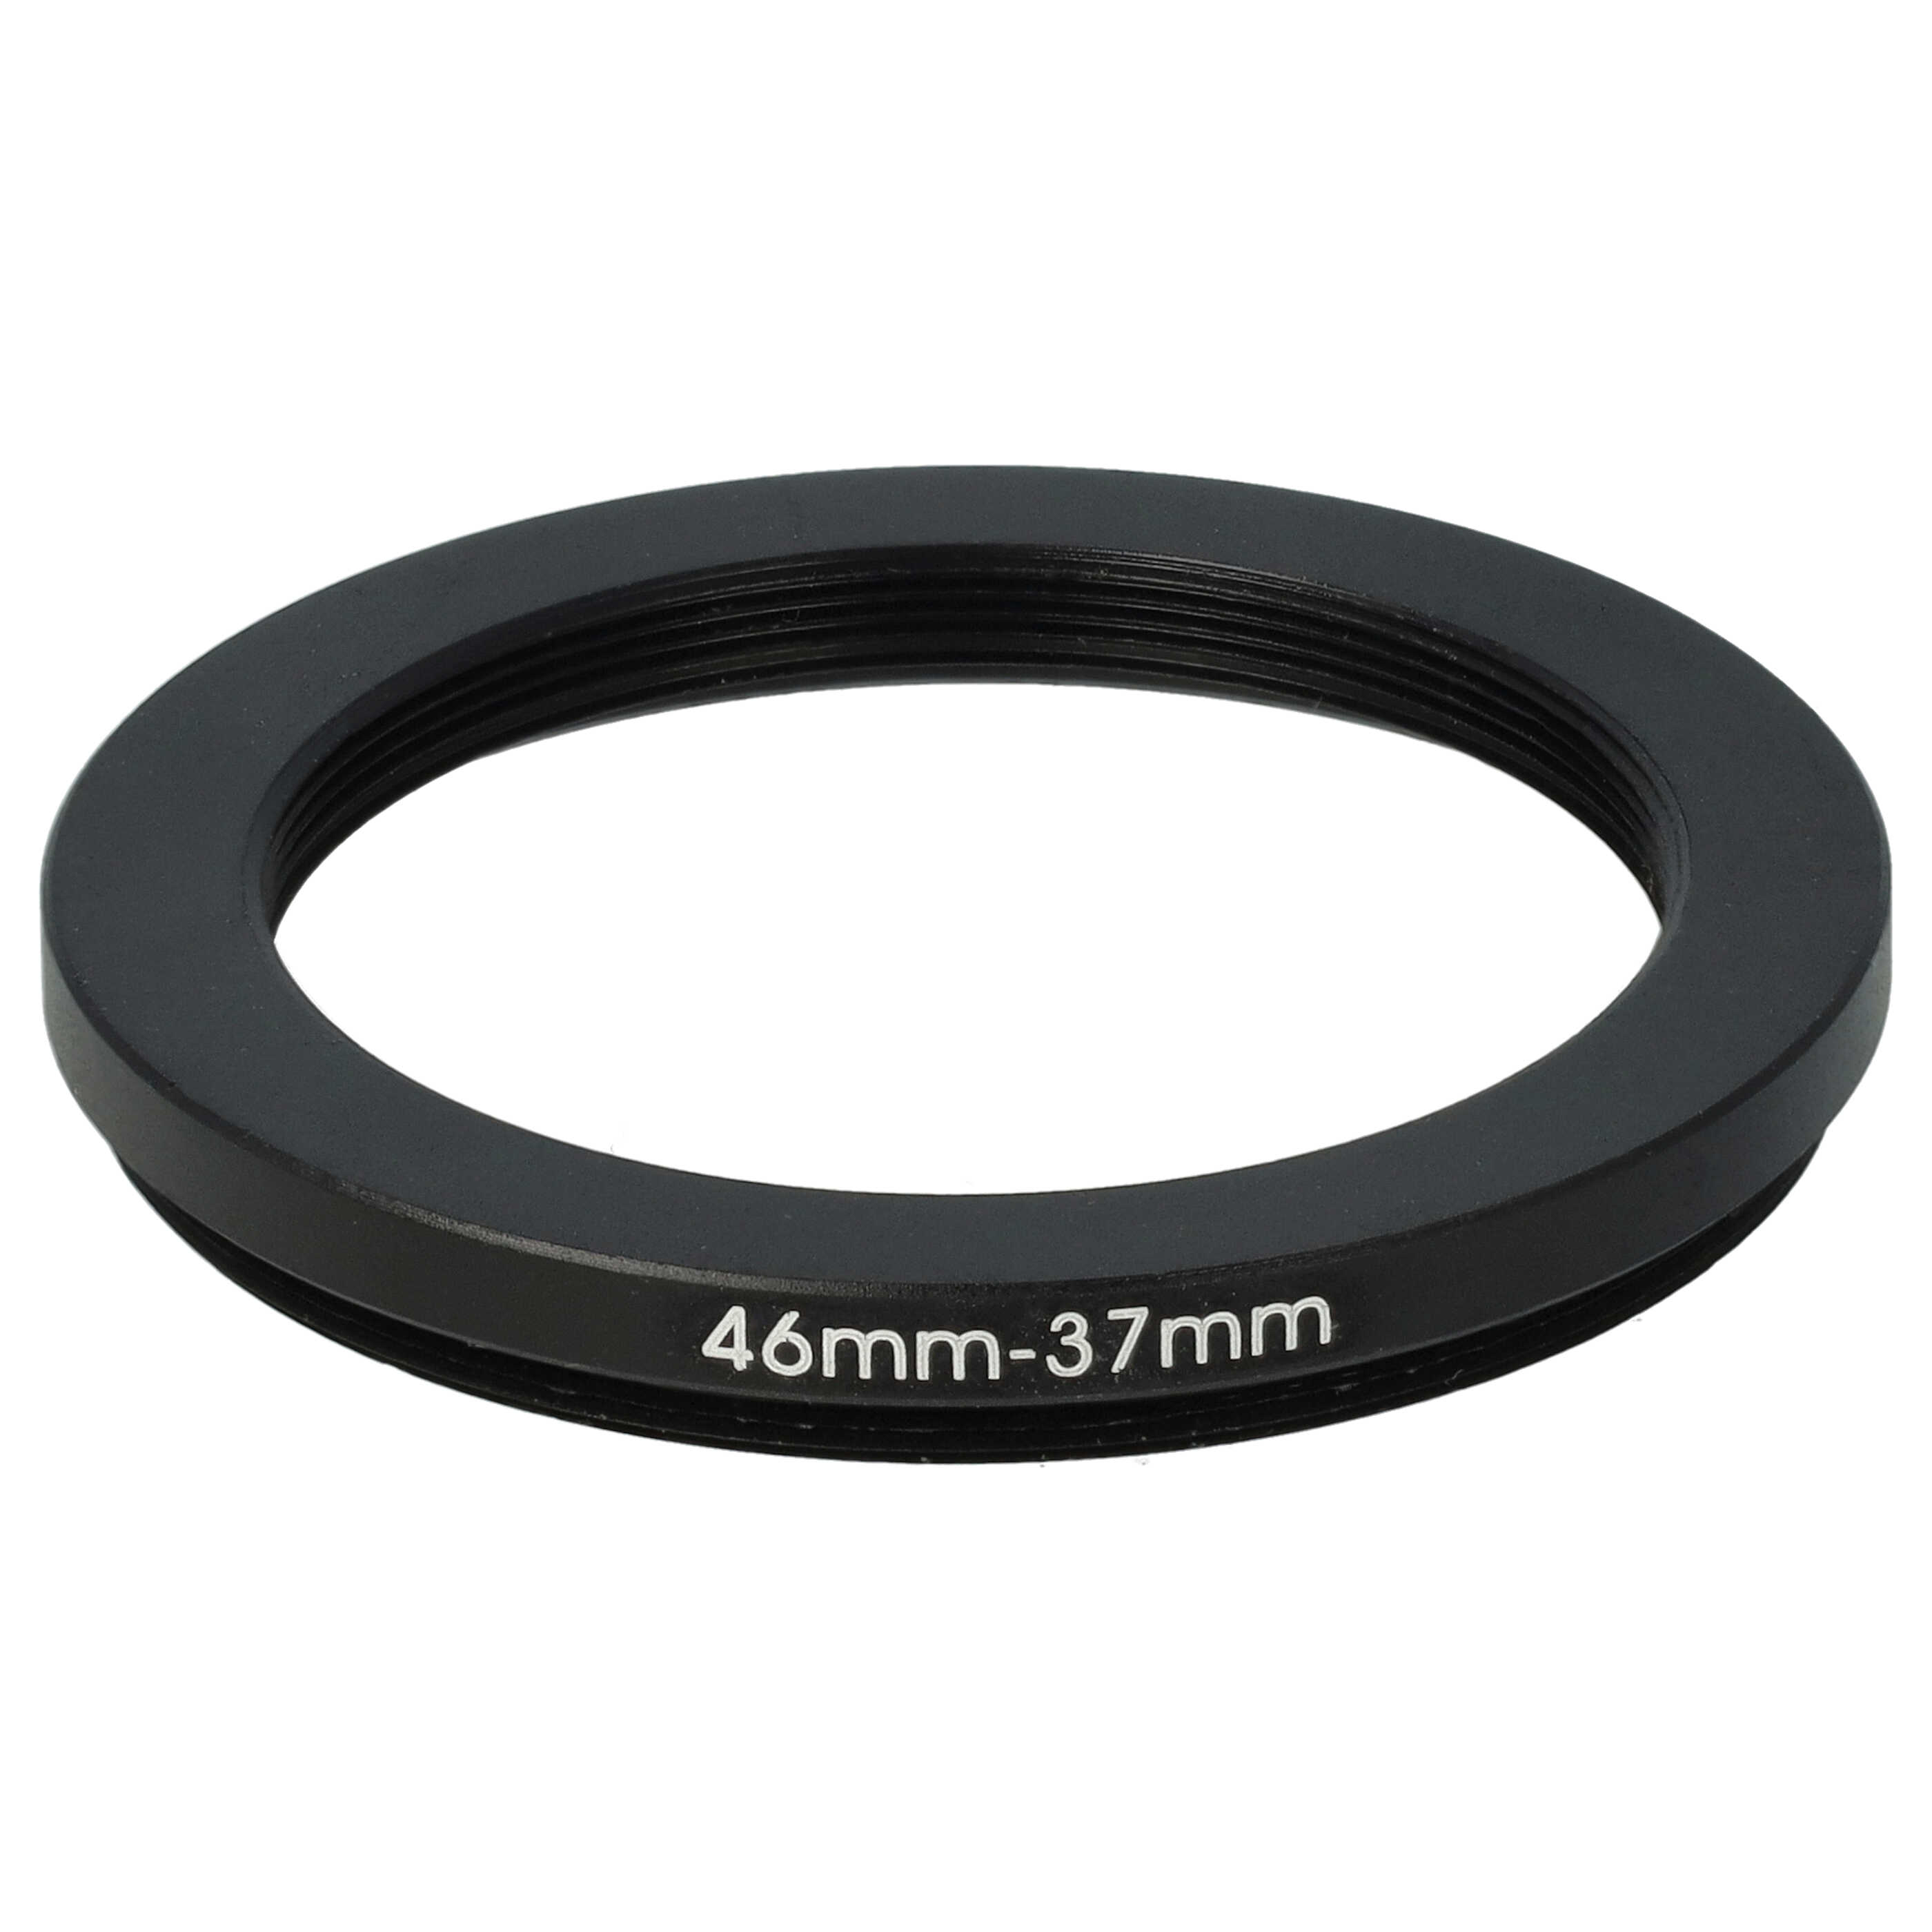 Redukcja filtrowa adapter Step-Down 46 mm - 37 mm pasująca do obiektywu - metal, czarny